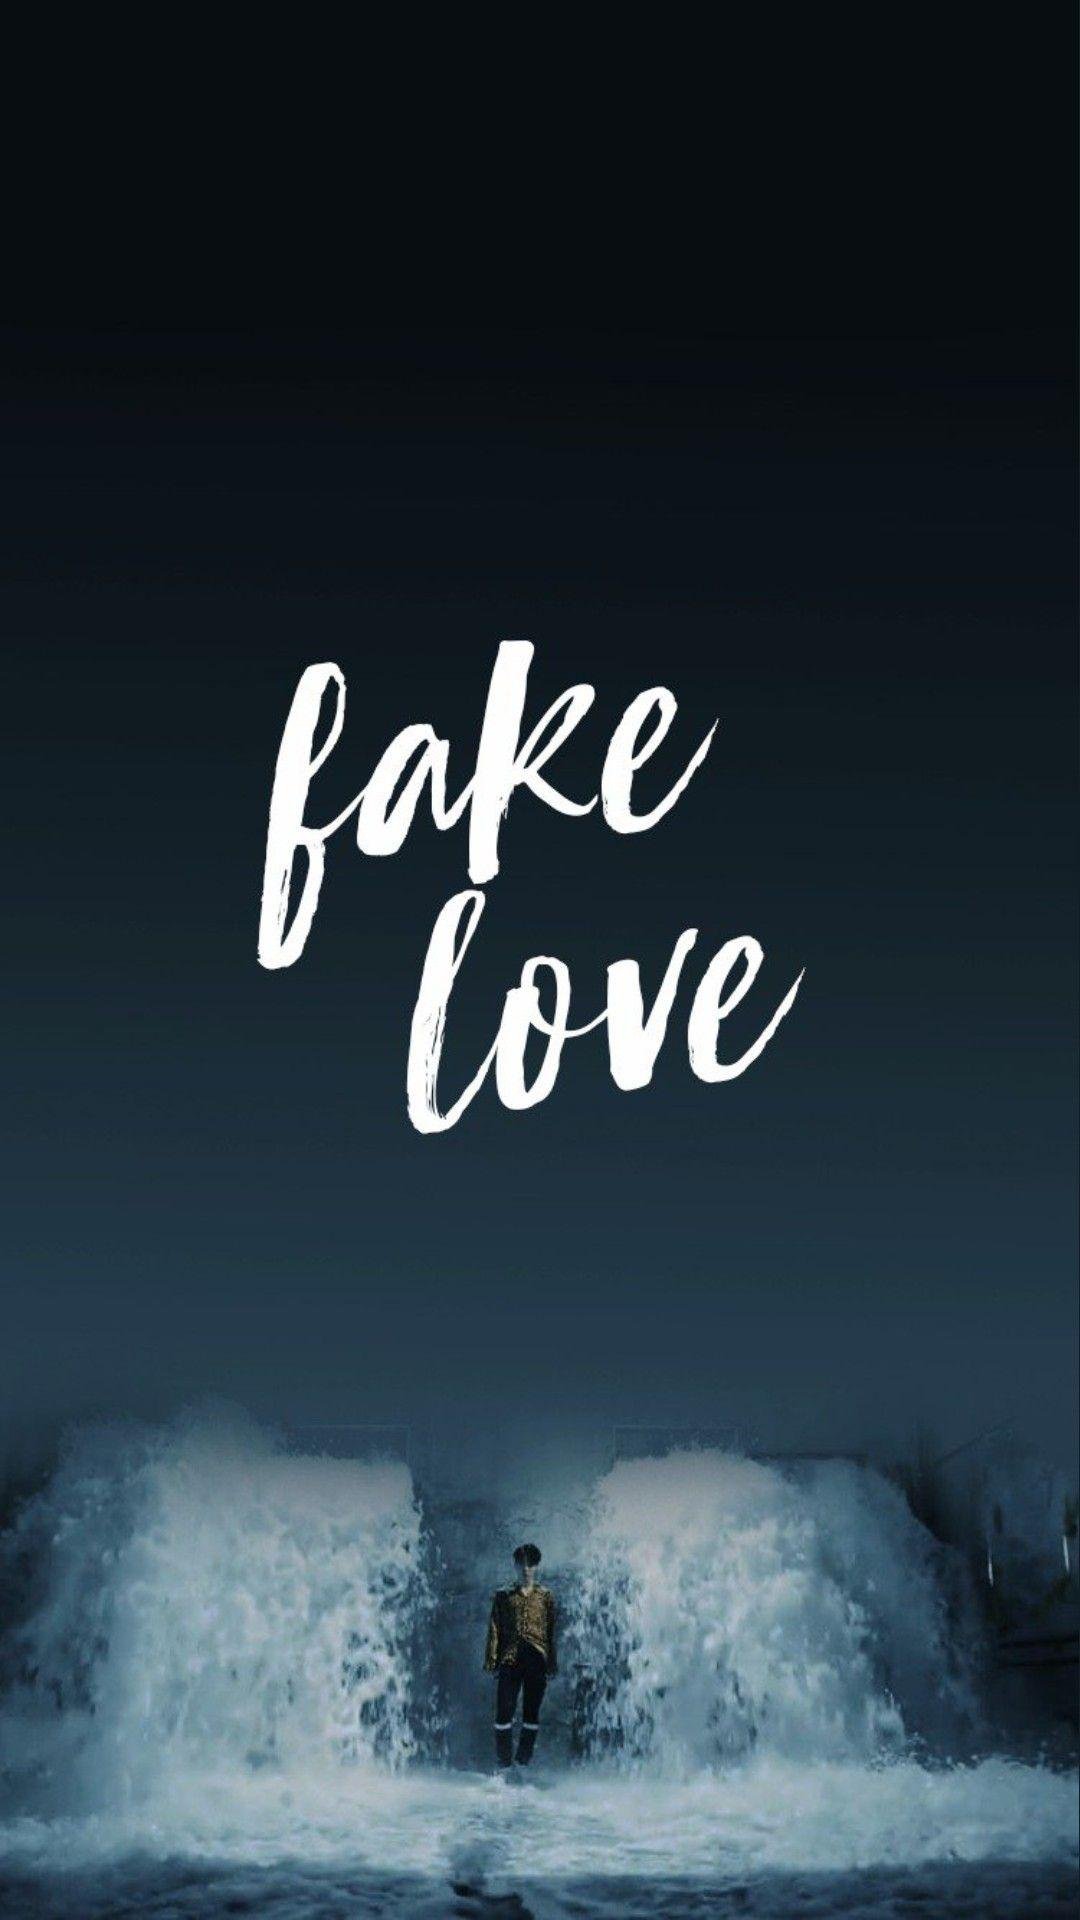 Bts - Fake Love